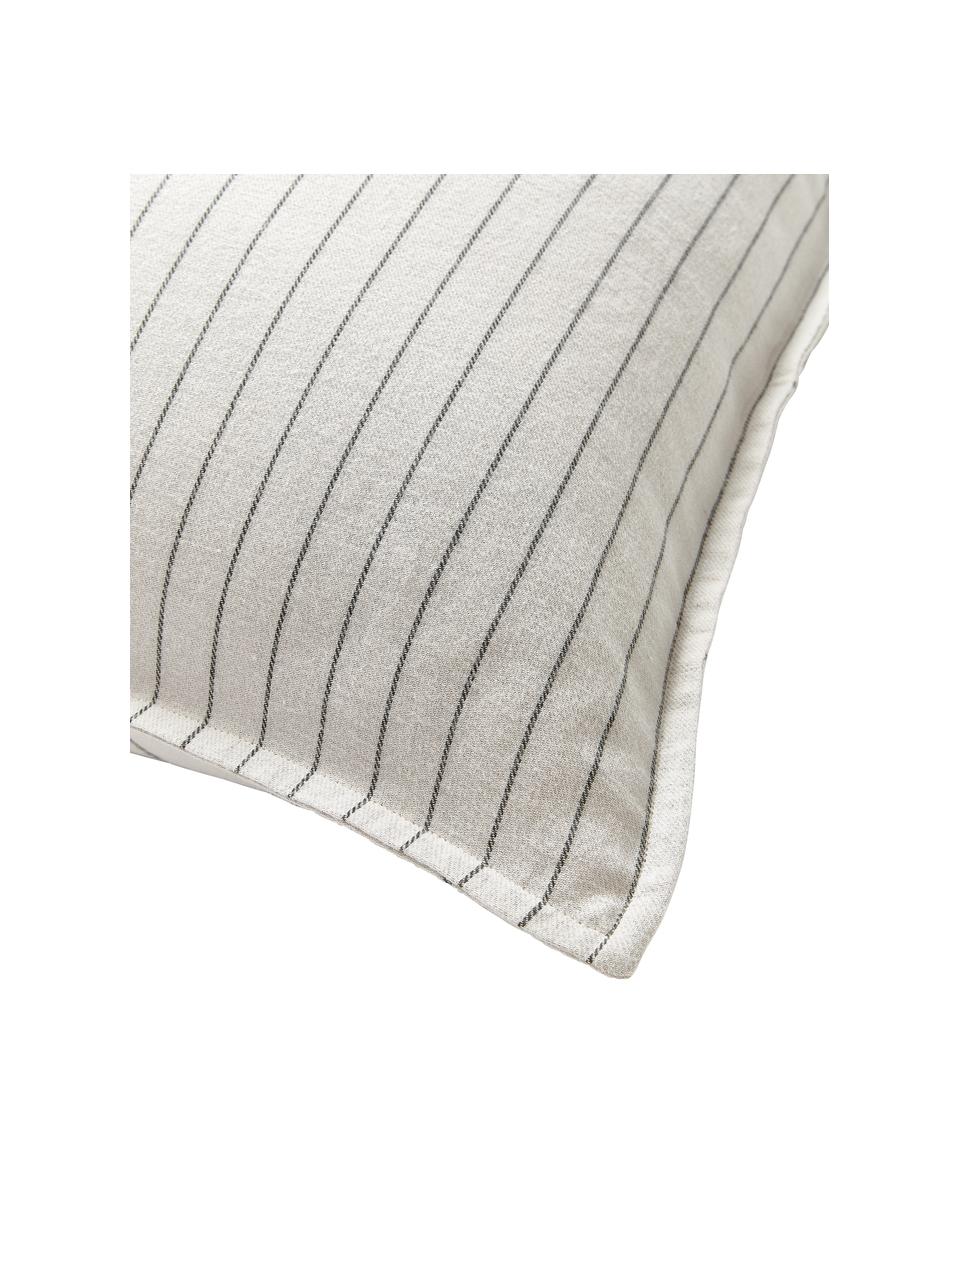 Funda de almohada doble cara de franela a cuadros Noelle, Blanco crema, gris oscuro, An 45 x L 110 cm